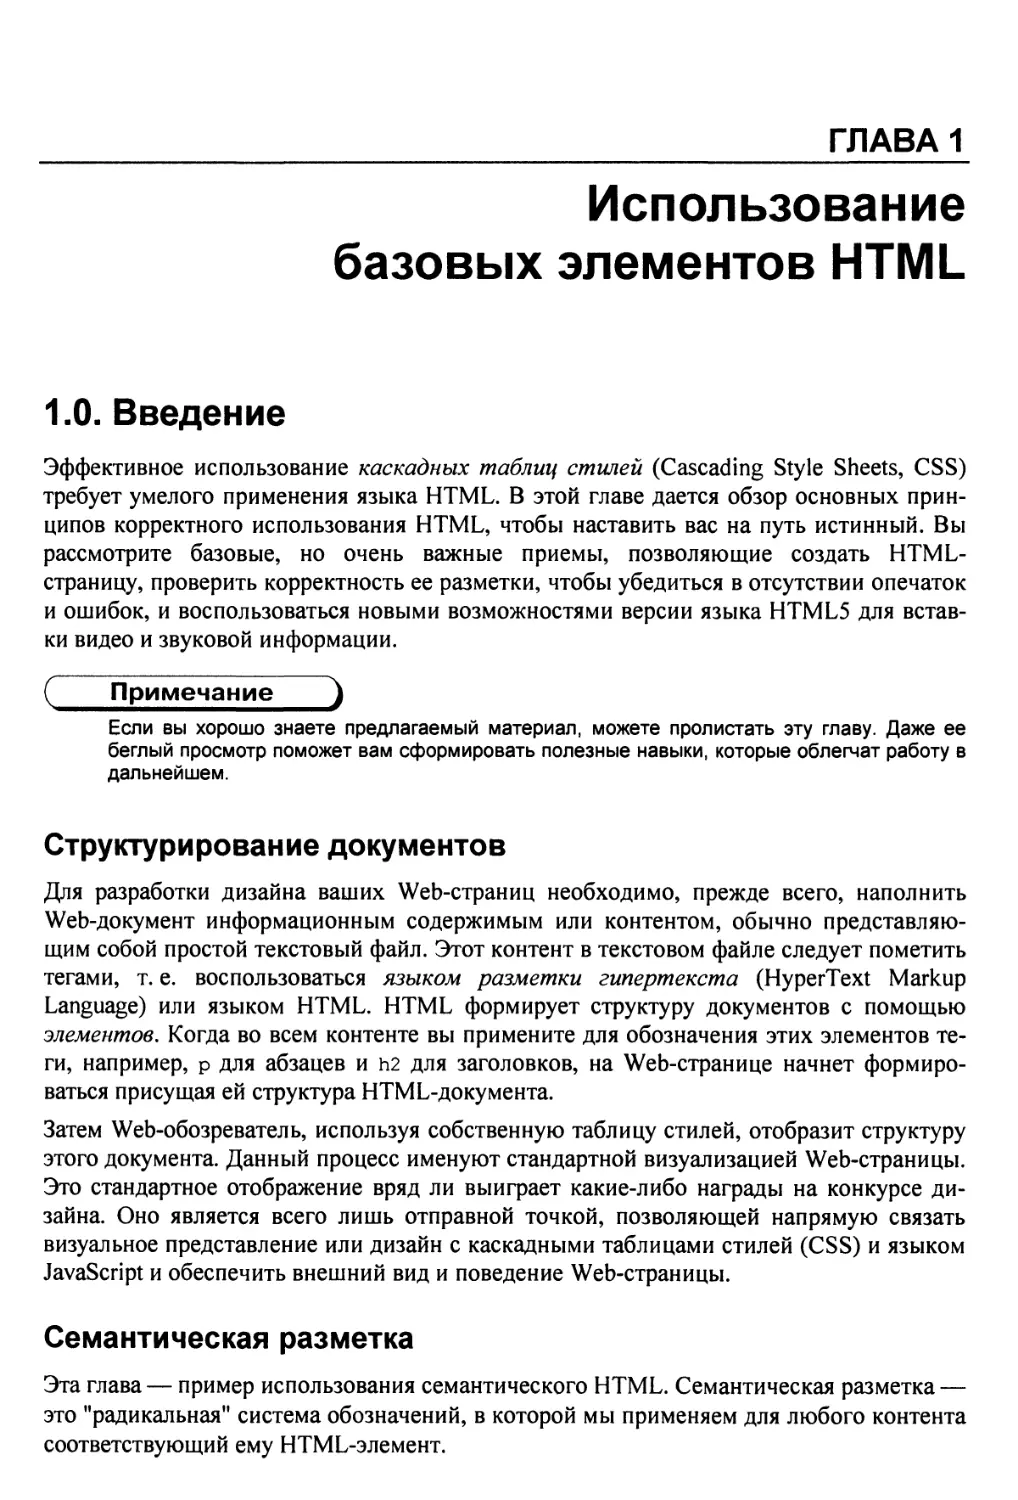 Глава 1. Использование базовых элементов HTML